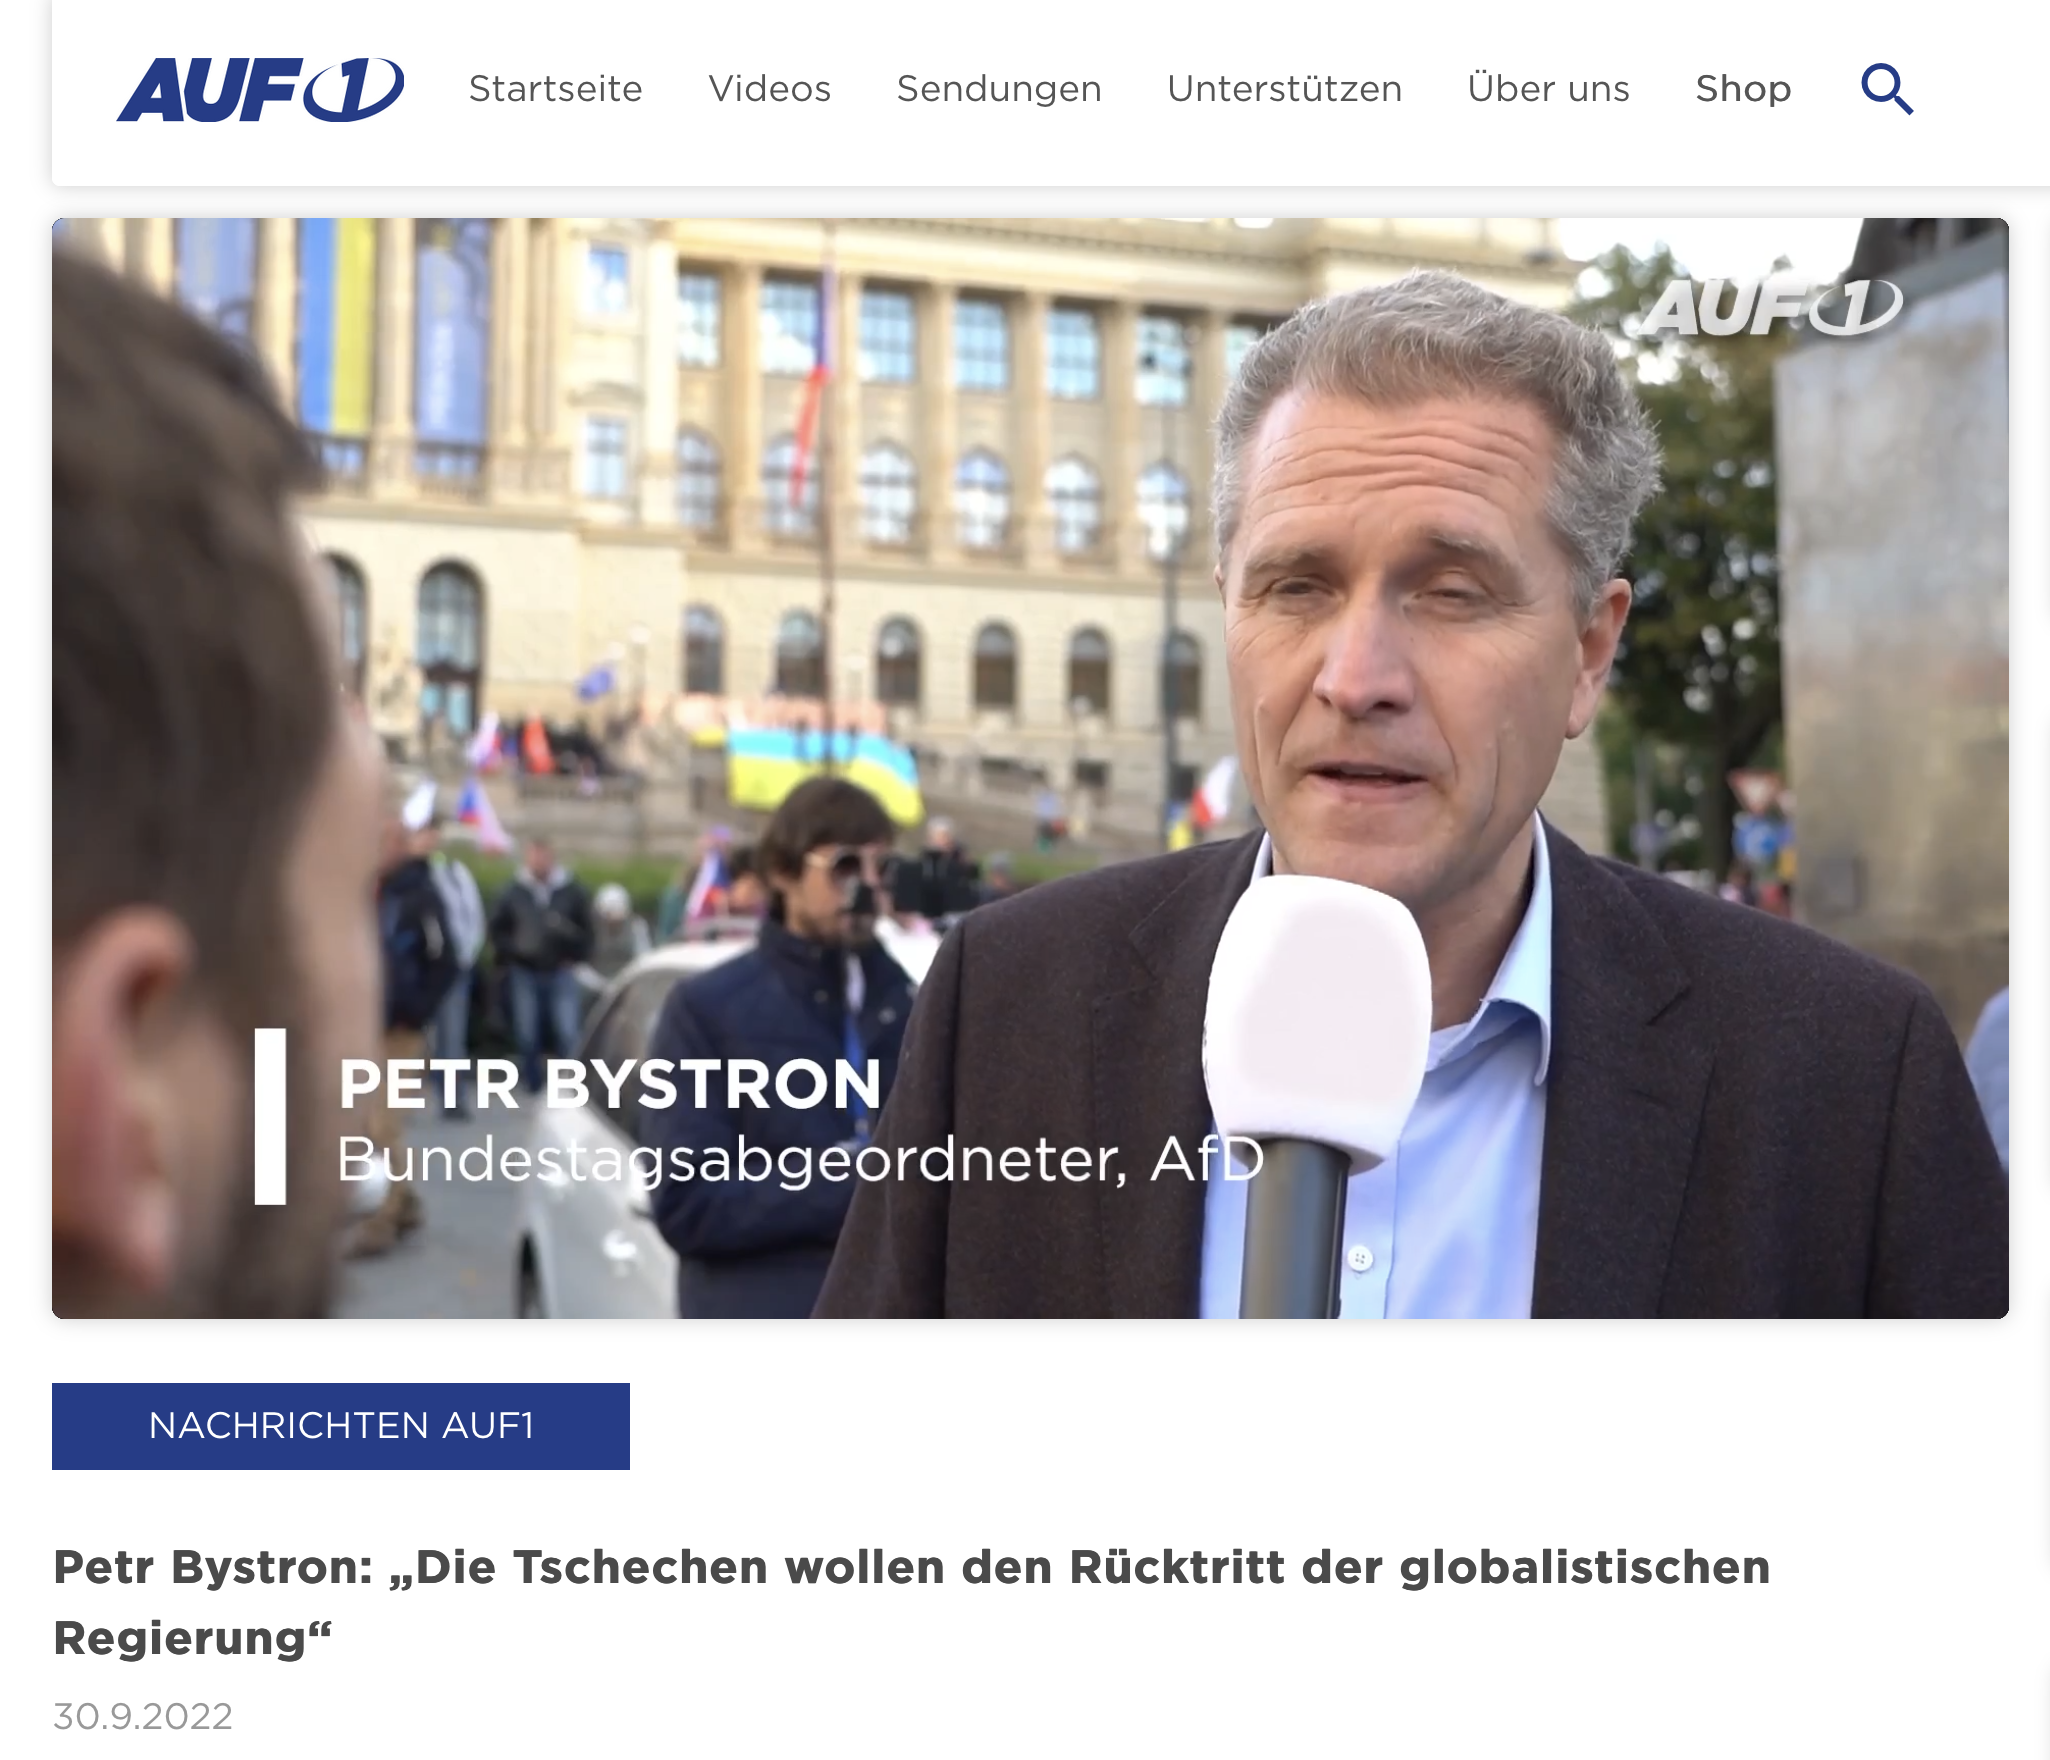 Der Bundestagsabgeordnete Petr Bystron (AfD-Europalistenplatz 2) bewirbt auf Telegram sein Interview mit der verschwörungsideologischen und rechtsextremen Webseite AUF1